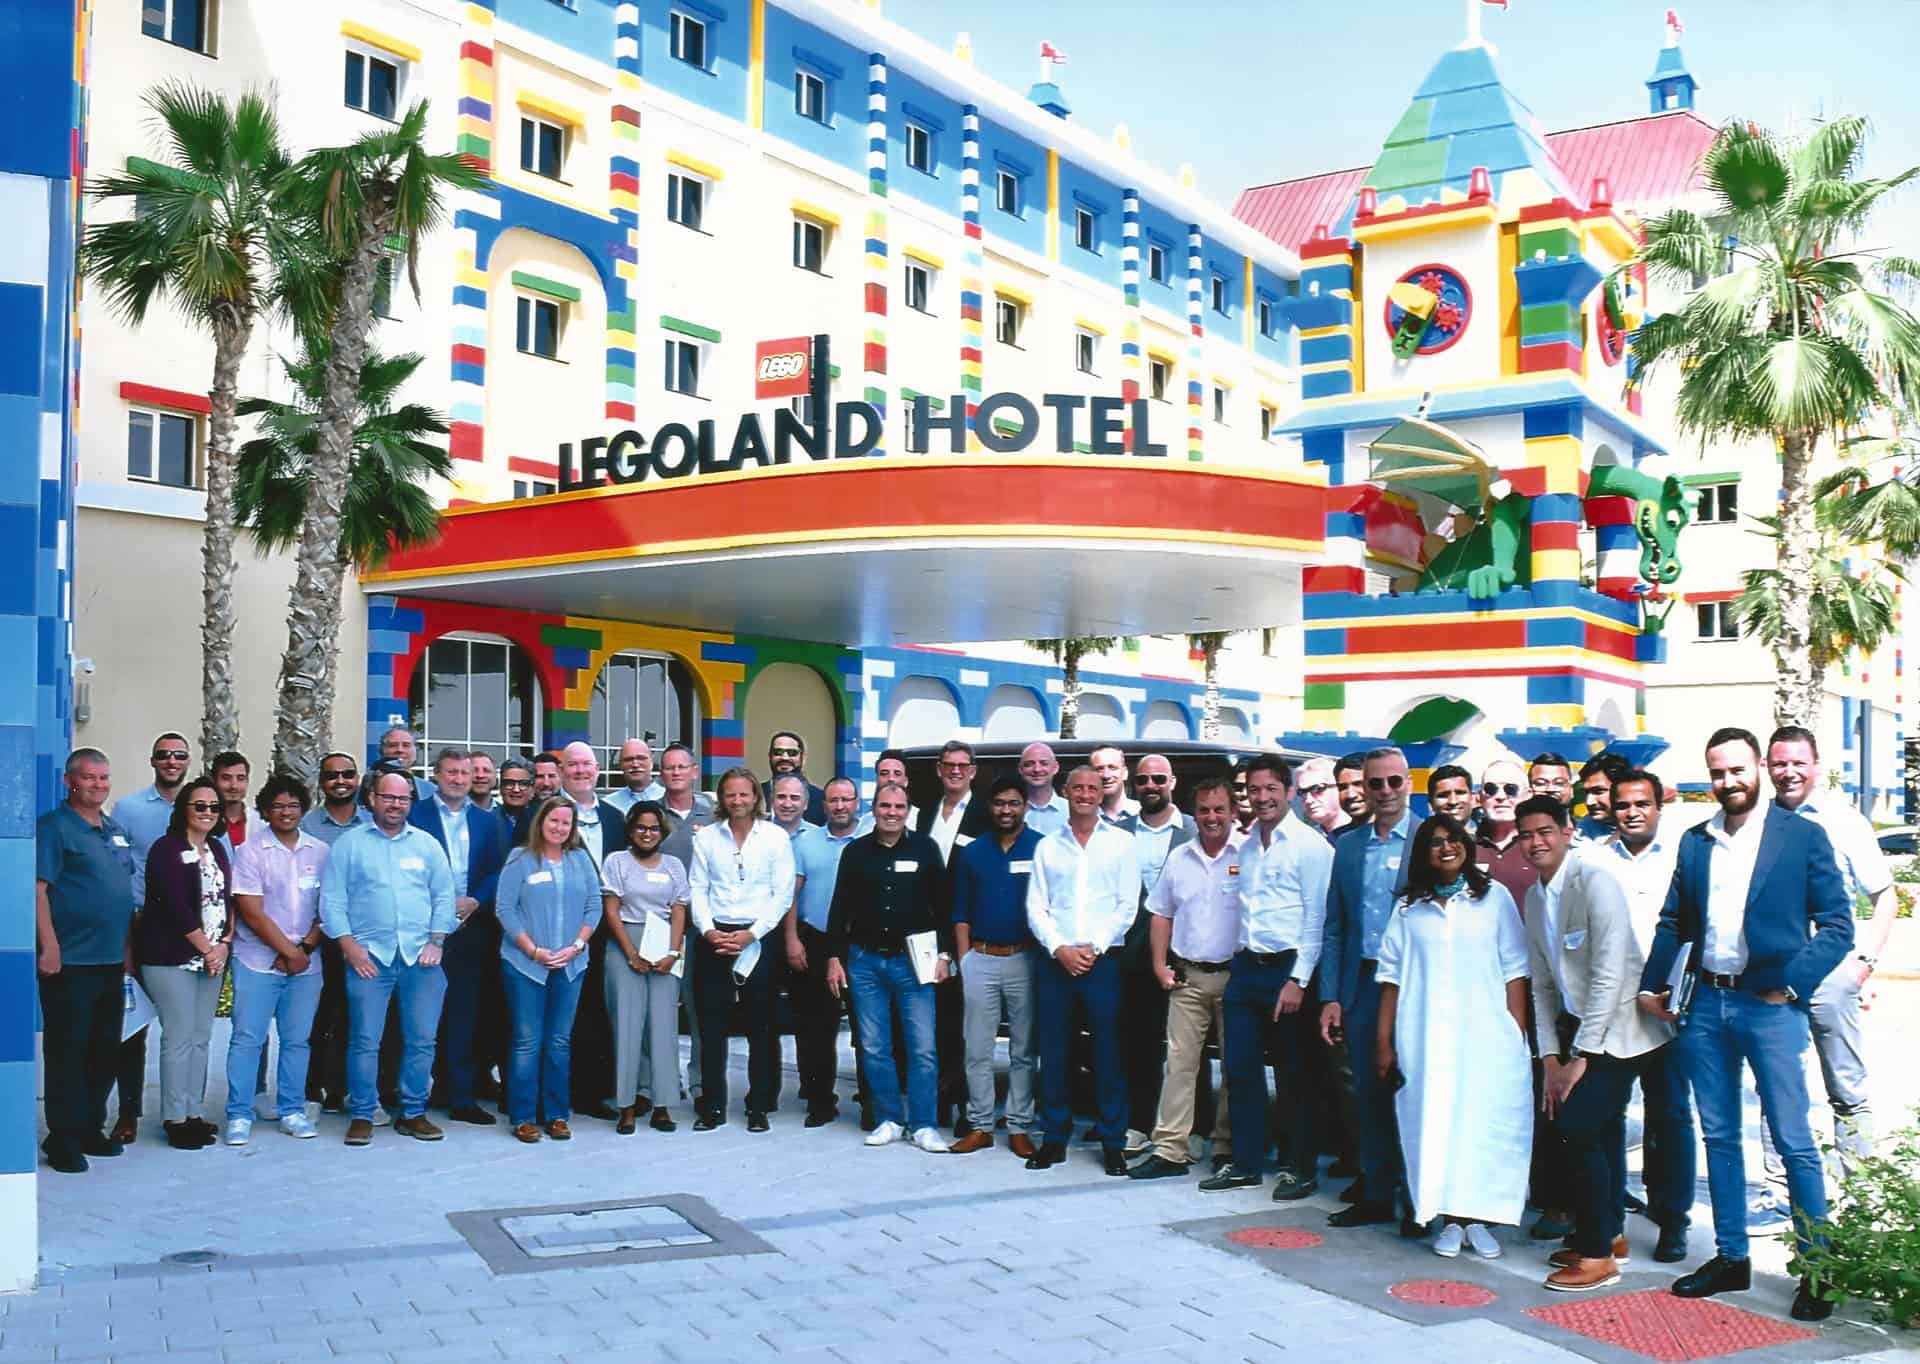 MENALAC 2022 at Dubai Legloland Hotel